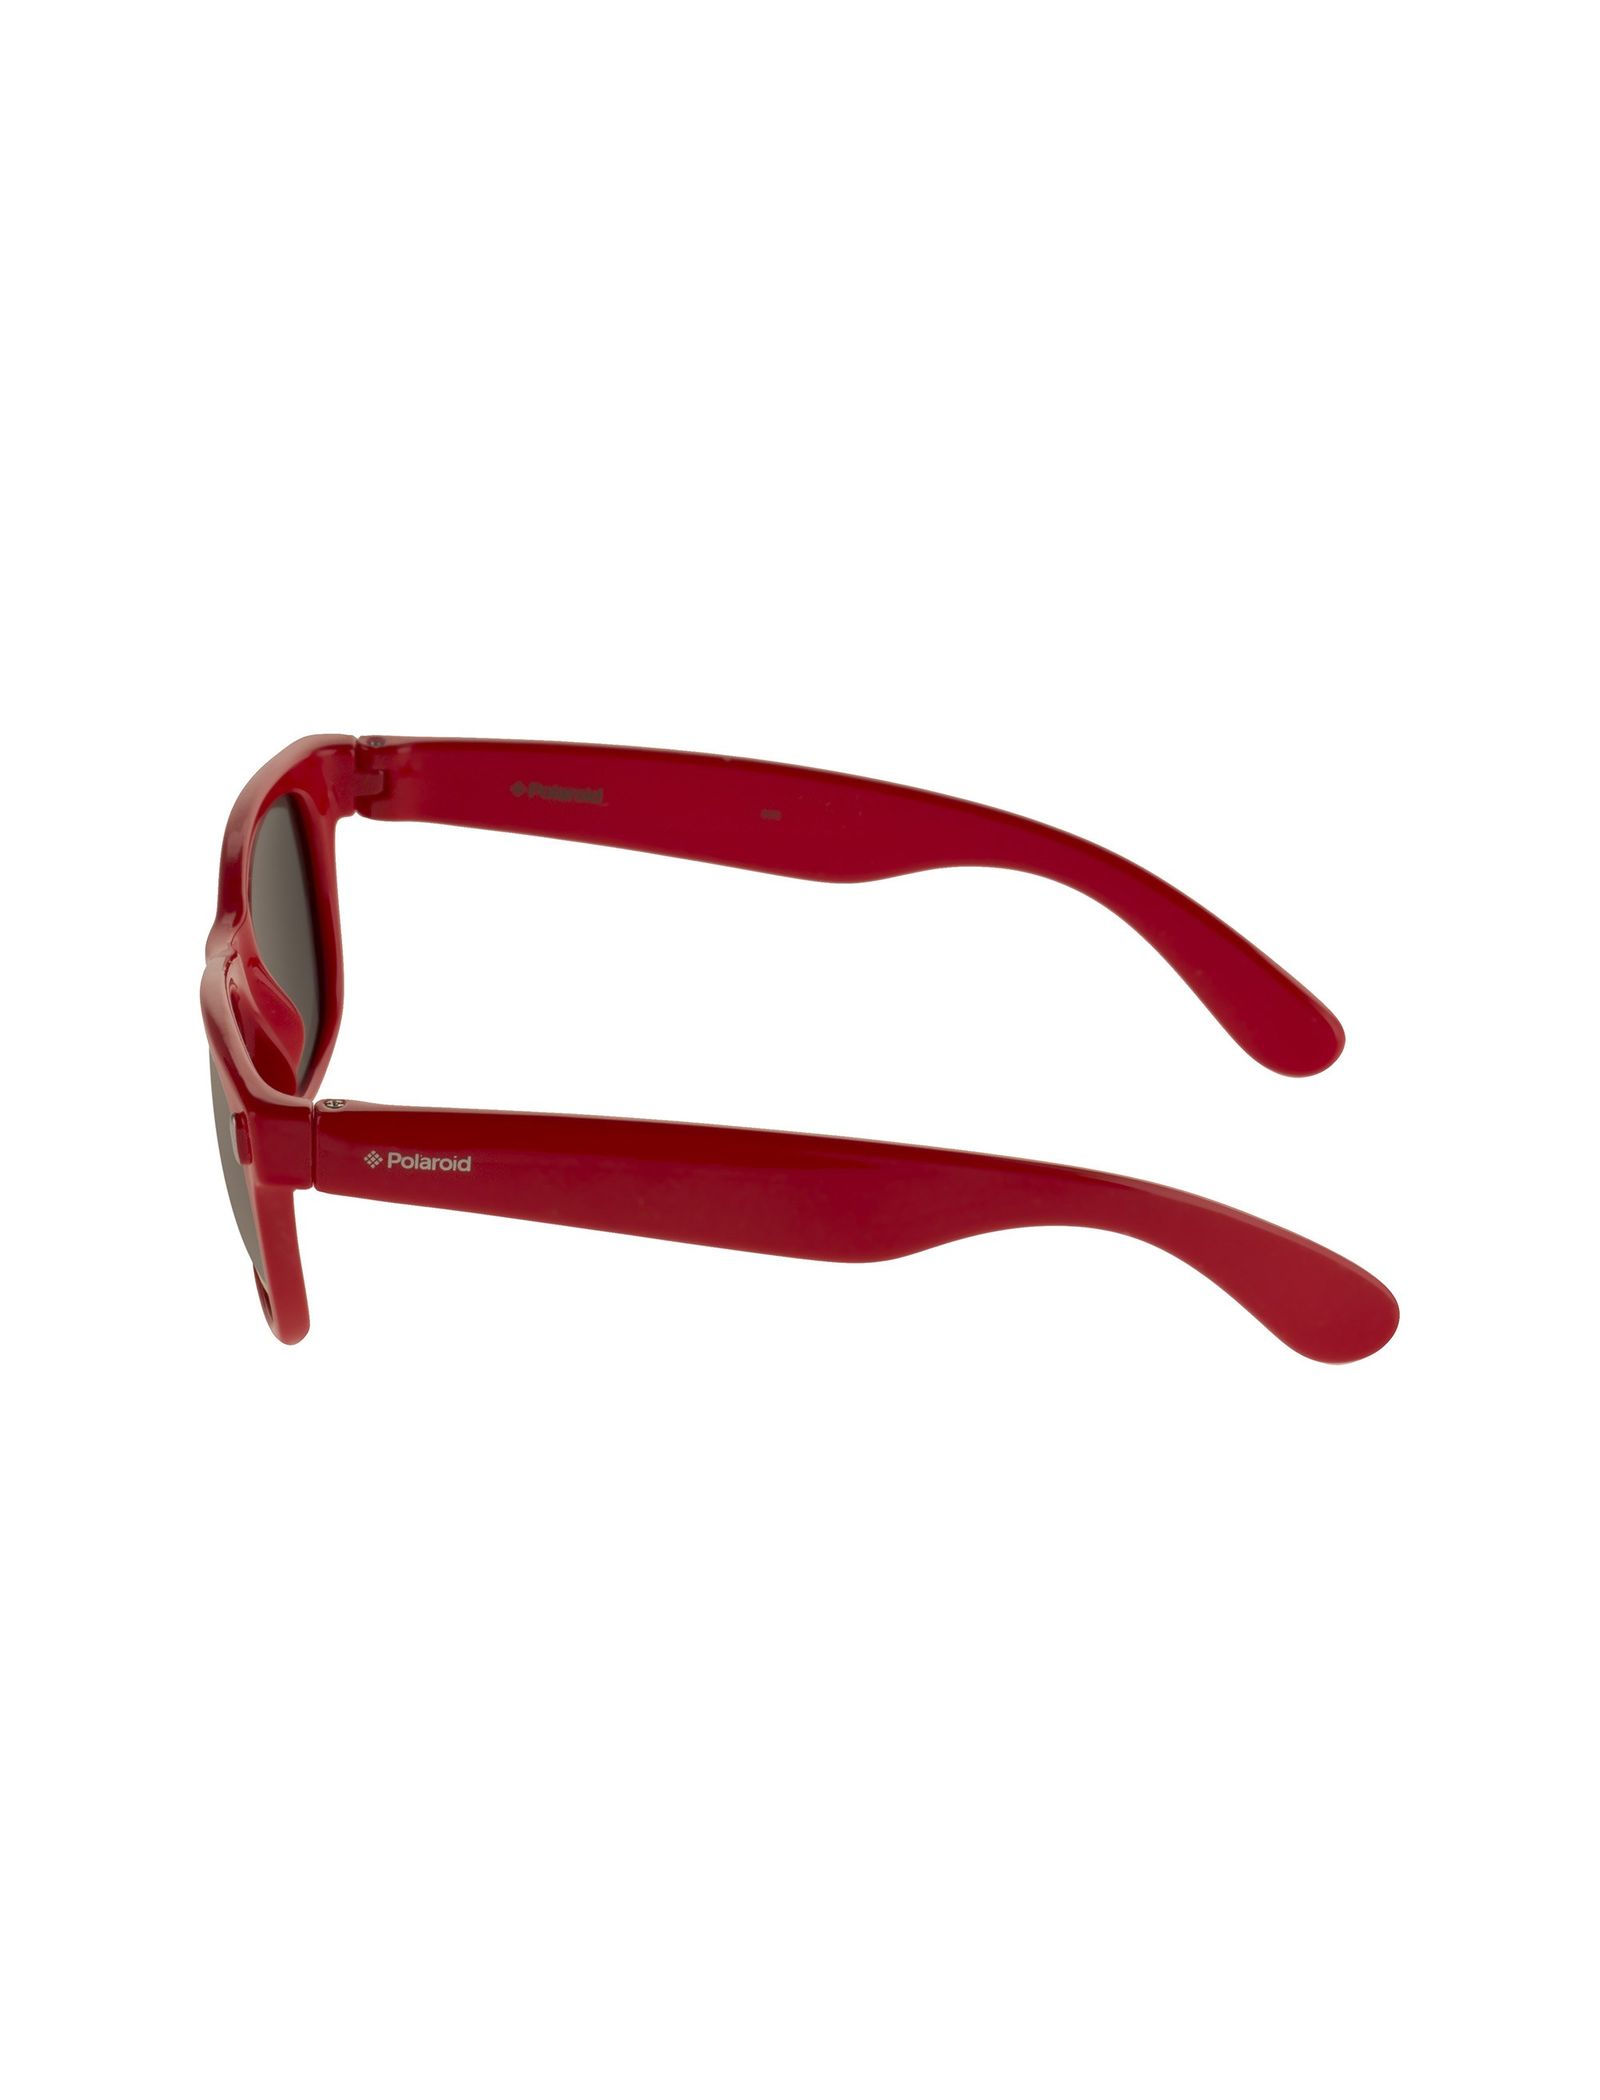 عینک آفتابی ویفرر بچگانه - پولاروید - قرمز - 4